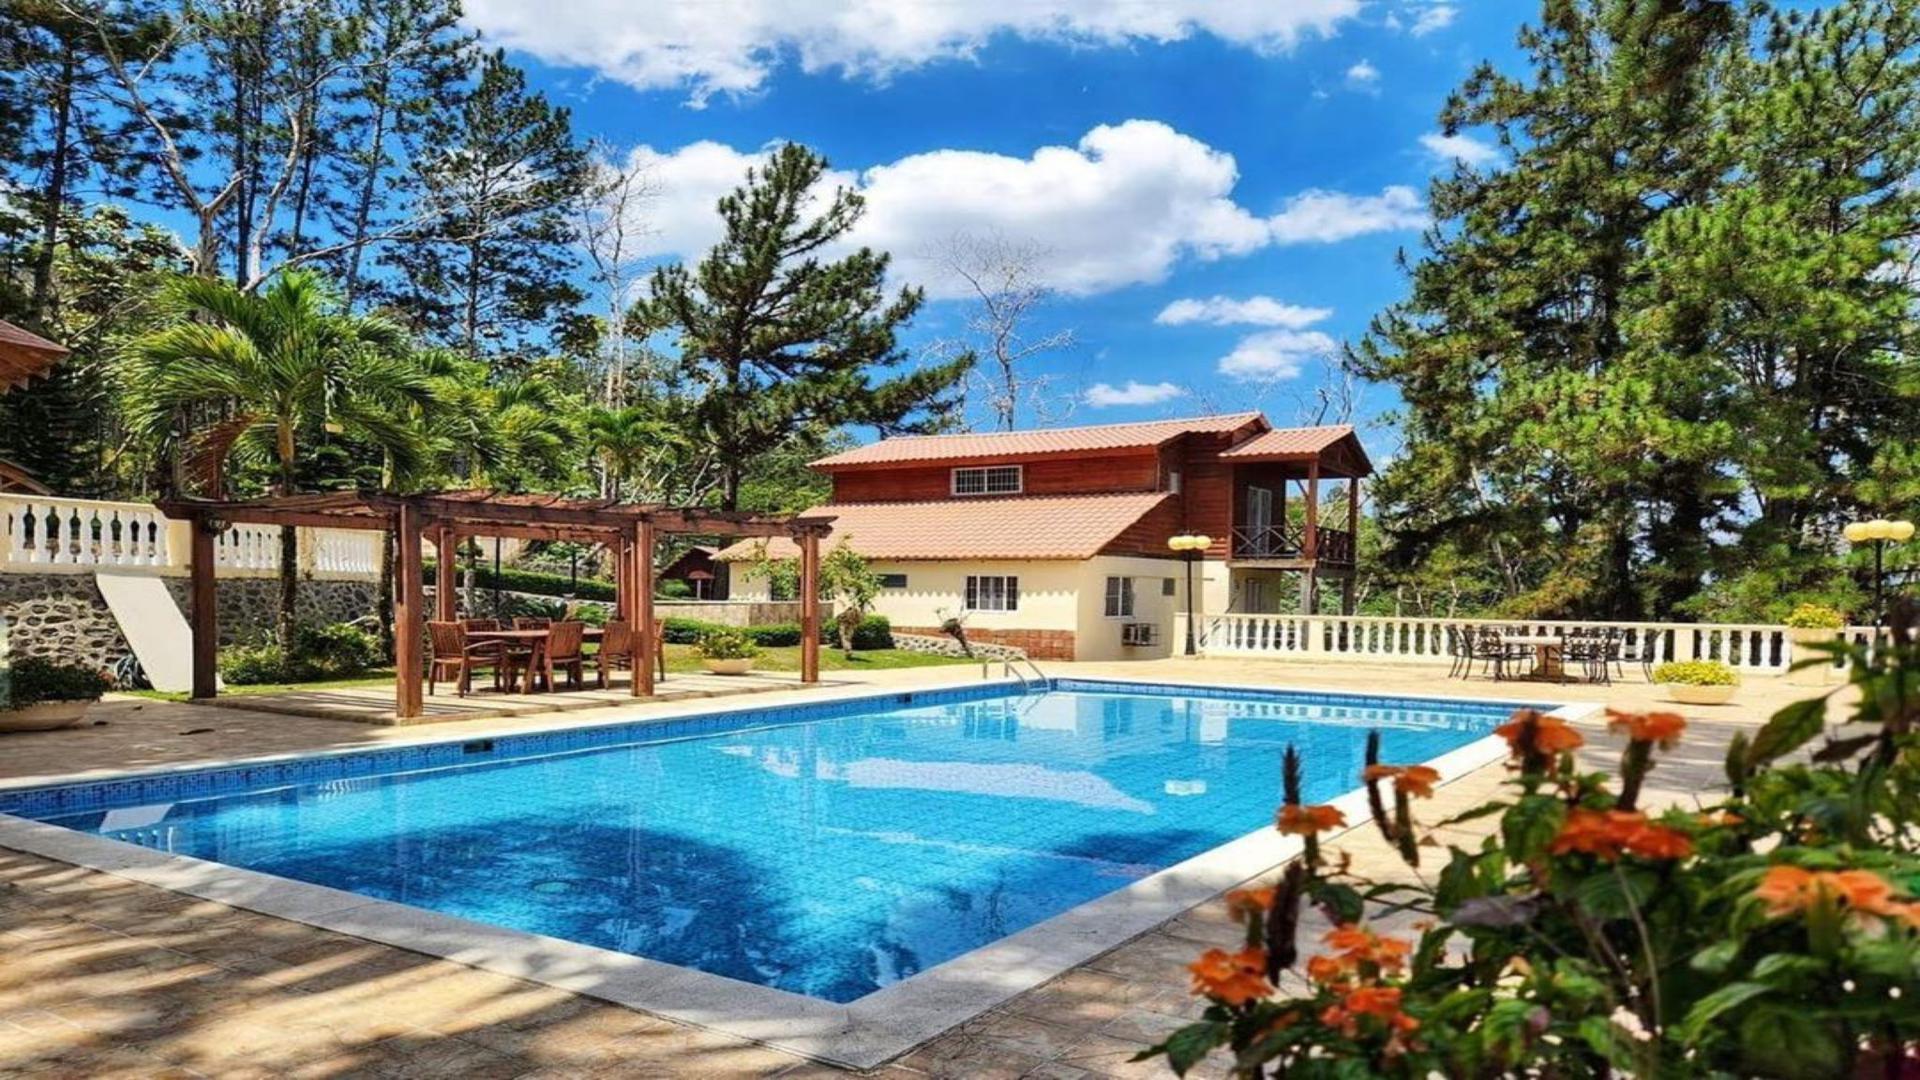 casas vacacionales y villas - Villa en Bonao con piscina de oportunidad rodeada de área verde 0